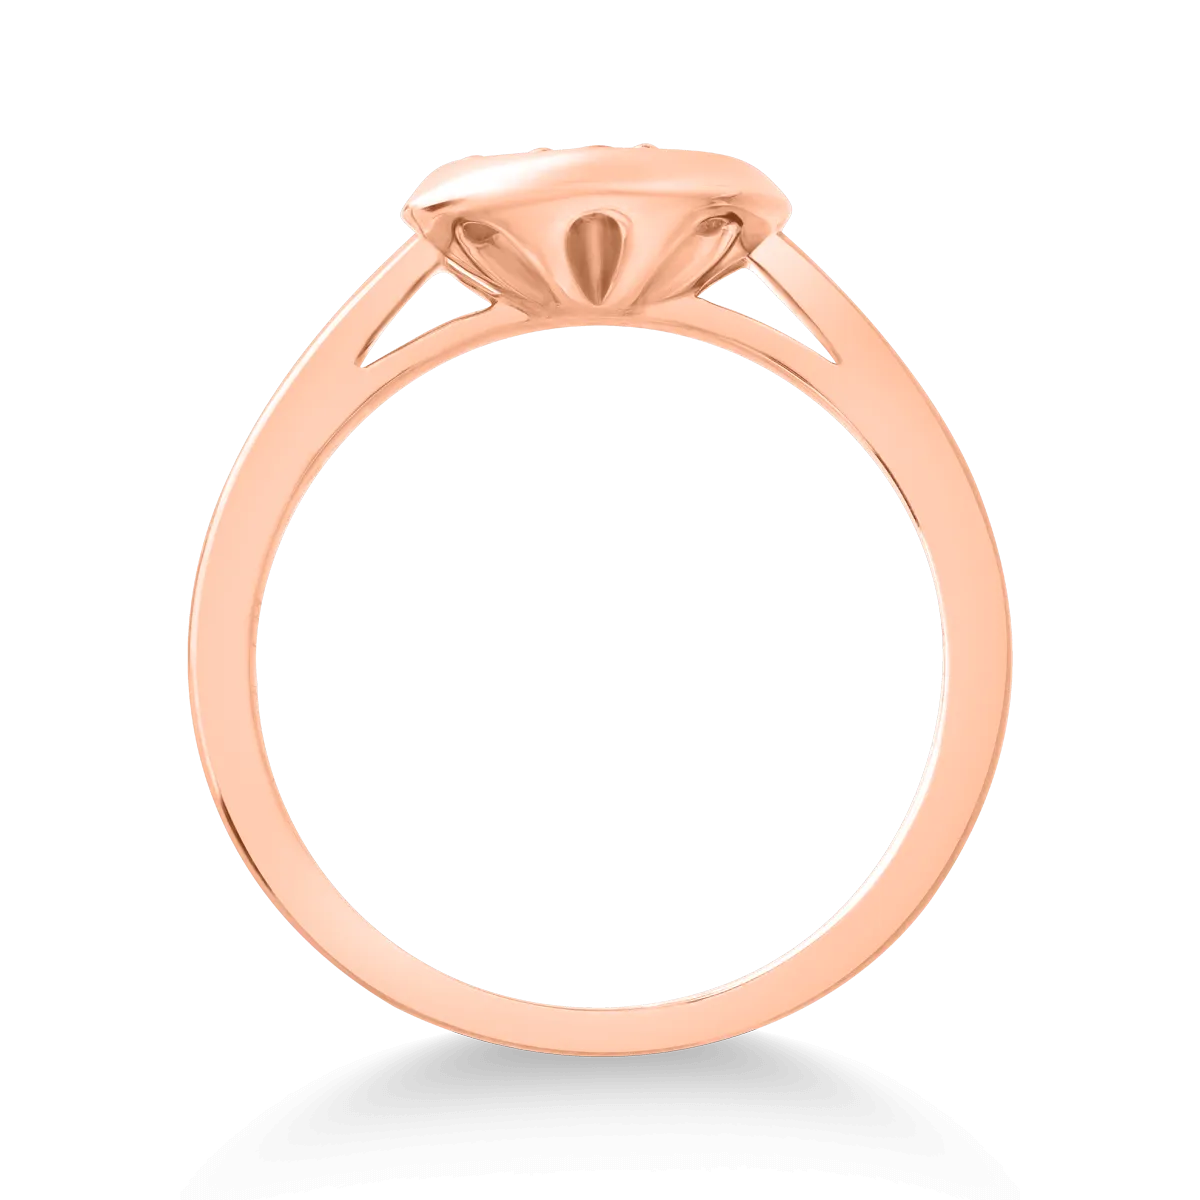 Inel din aur roz de 14K cu diamante de 0.44ct